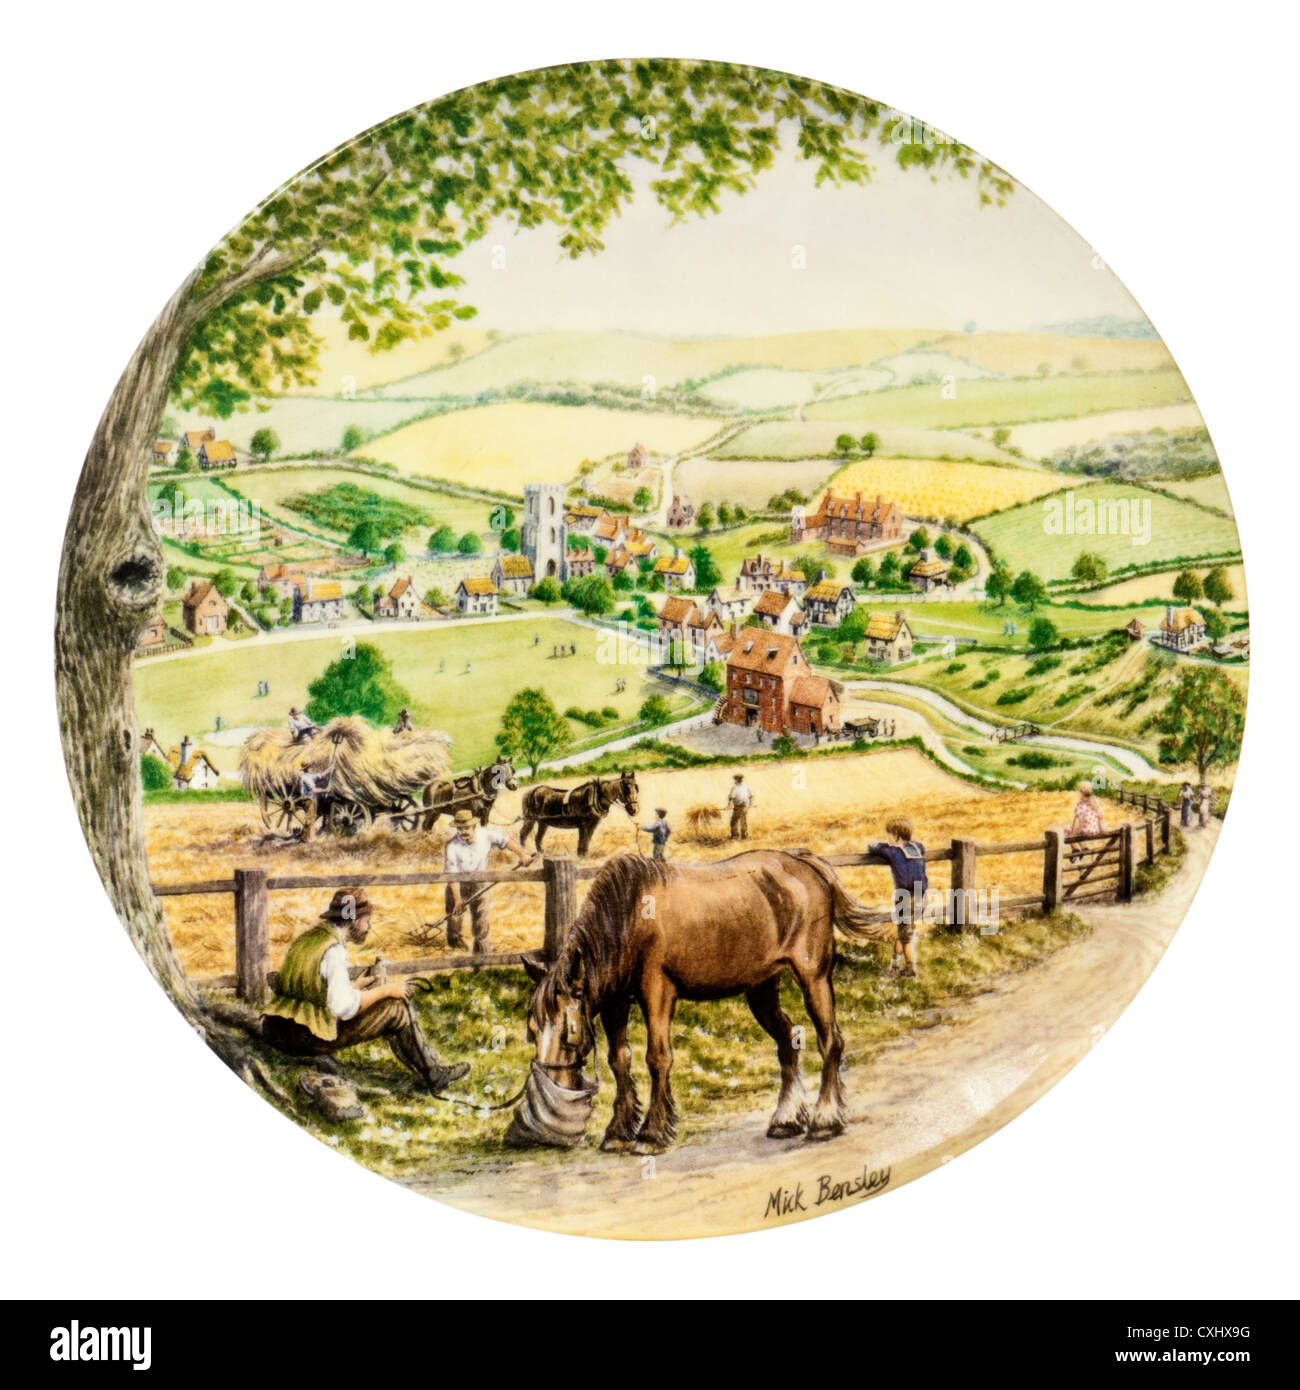 Royal Doulton Porzellan Sammler Teller - "Milnsey Beck", spezielle Finale Ausgabe (9.) in der Reihe "Reise durch das Dorf" Stockfoto